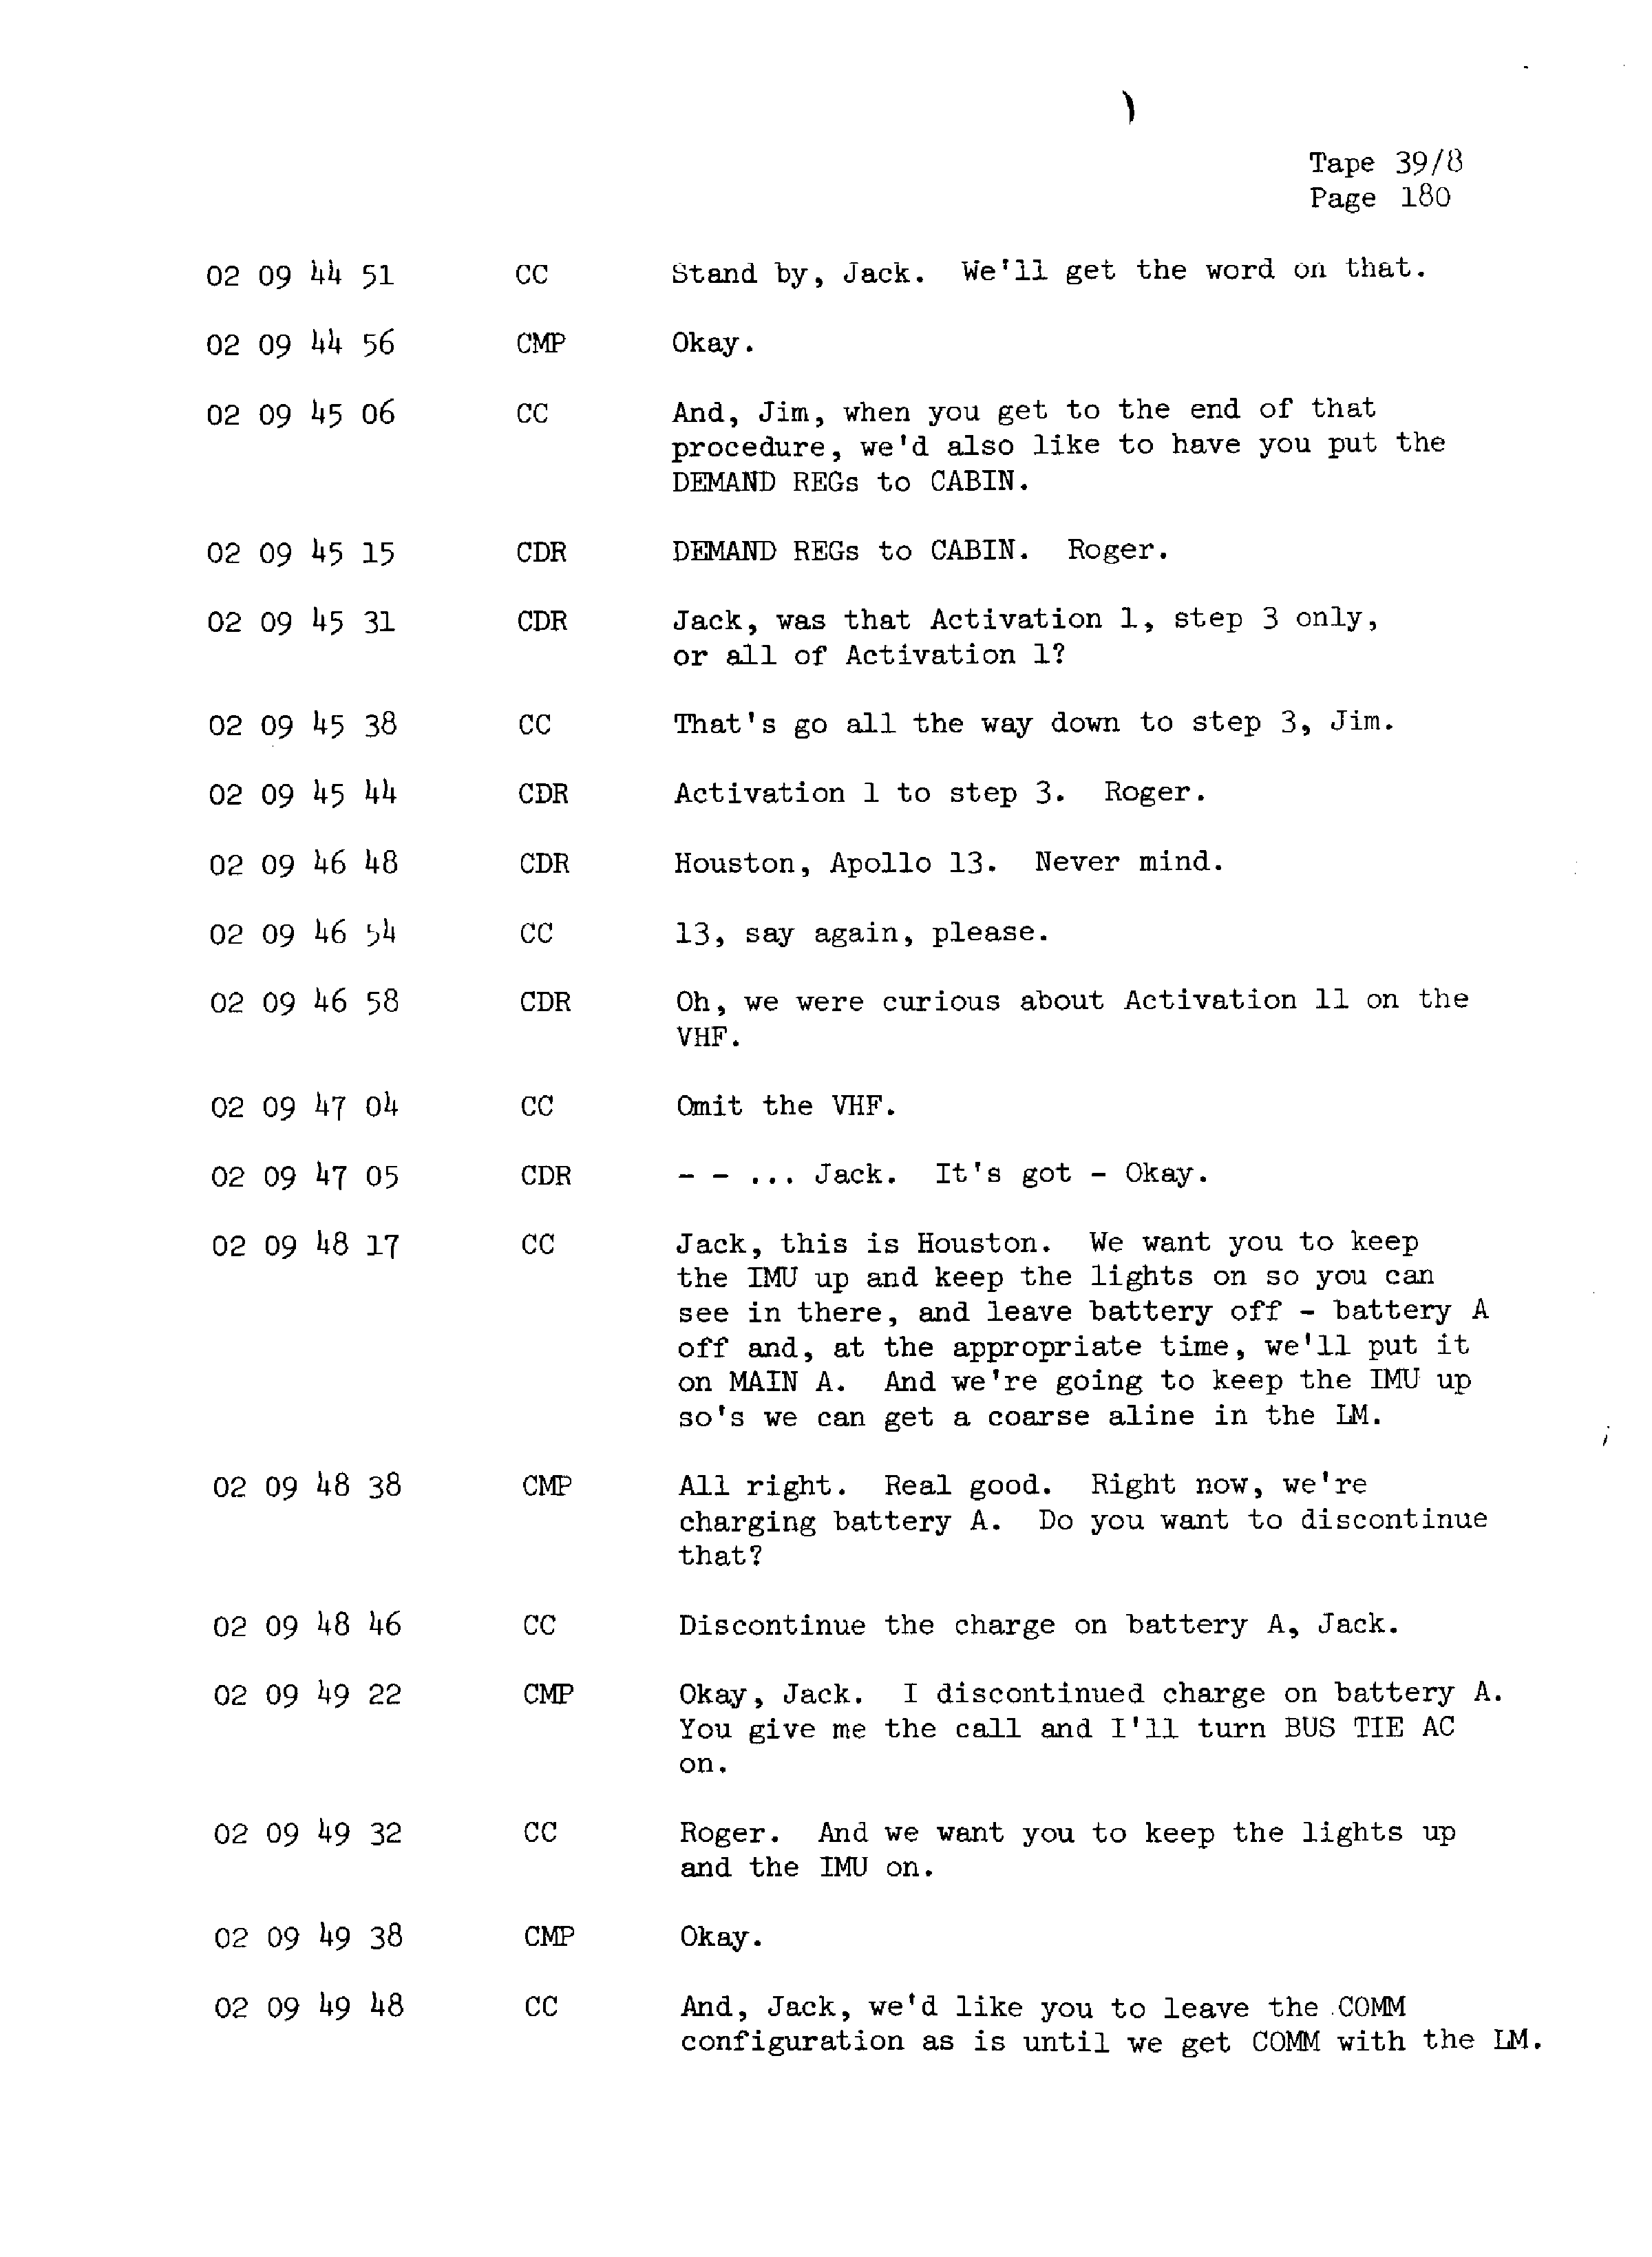 Page 186 of Apollo 13’s original transcript